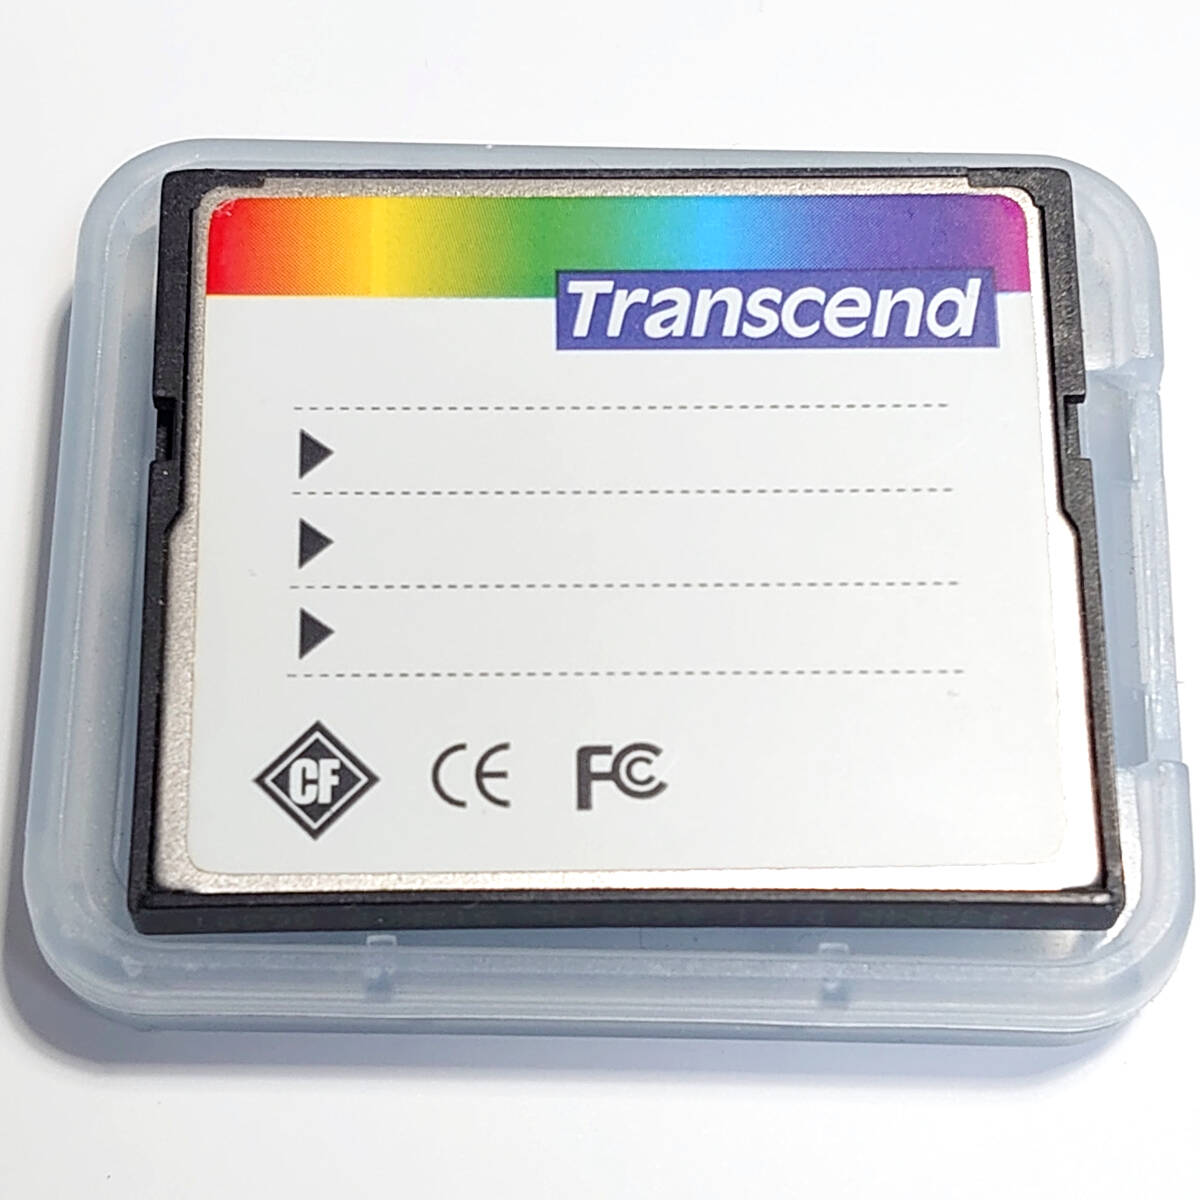 フォーマット済 ケース付 512MB 80x Transcend コンパクトフラッシュ メモリーカードの画像3